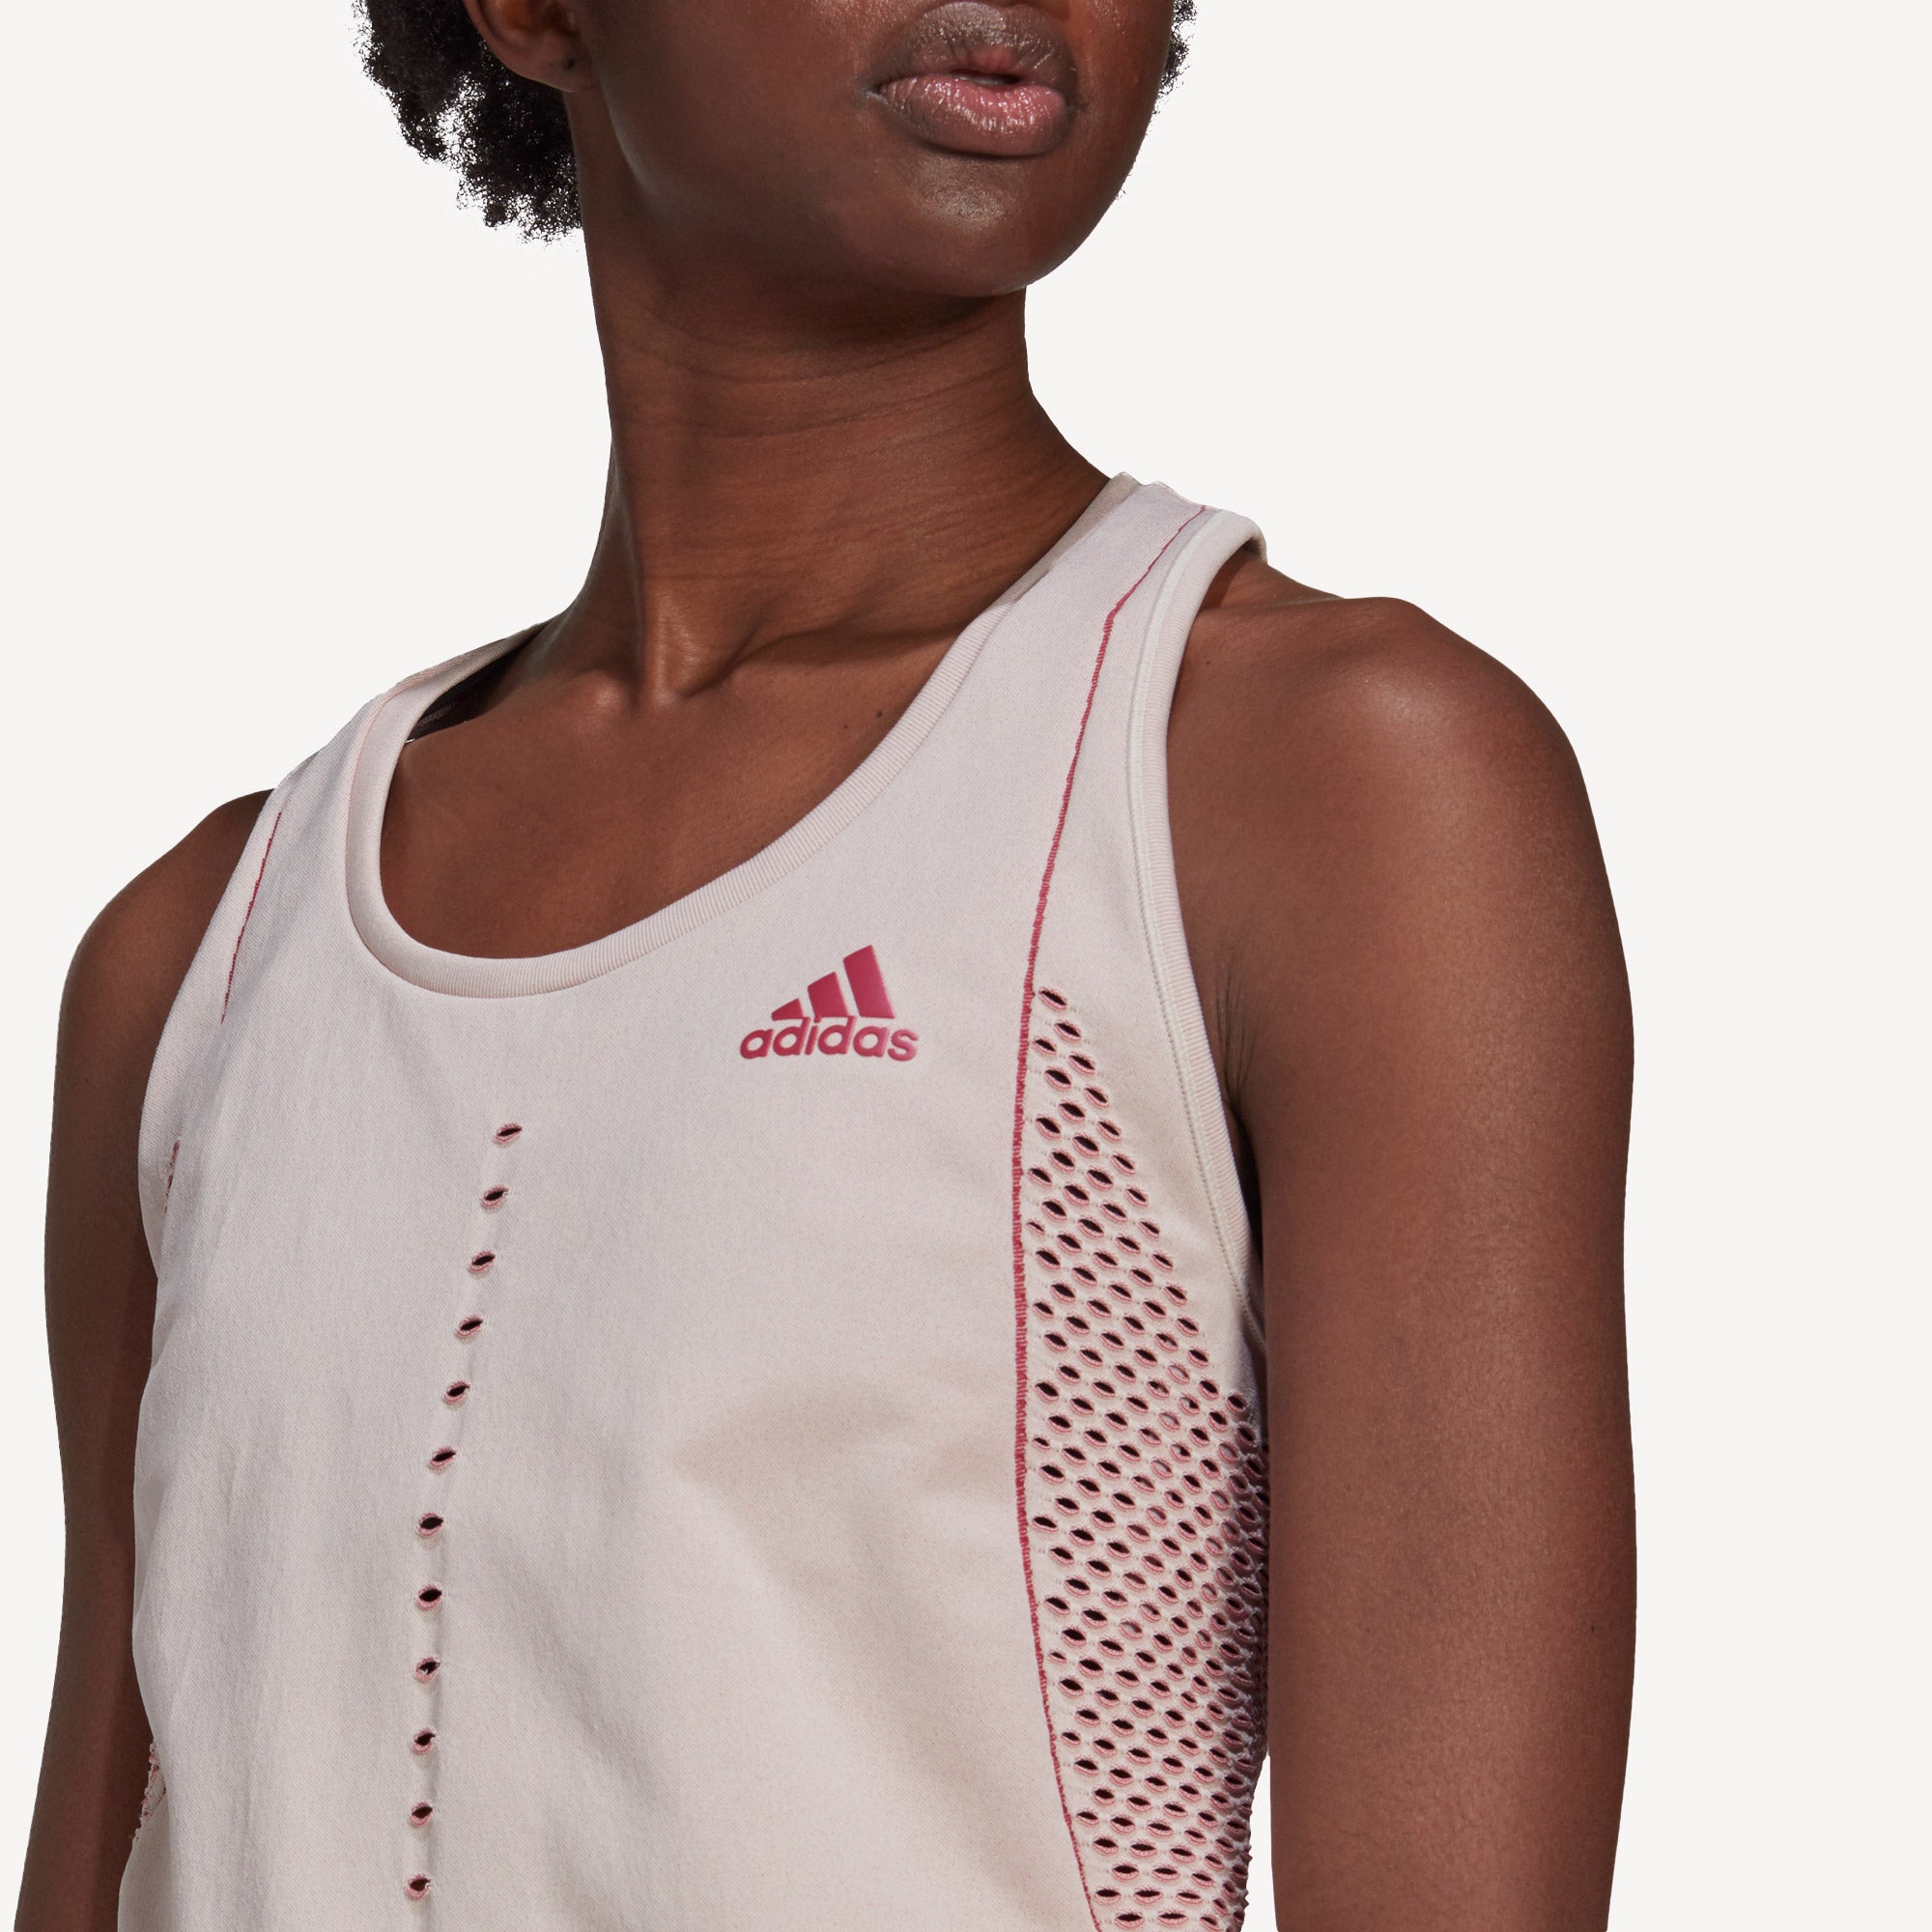 adidas Primeknit Primeblue Women's Tennis Tank White (4)